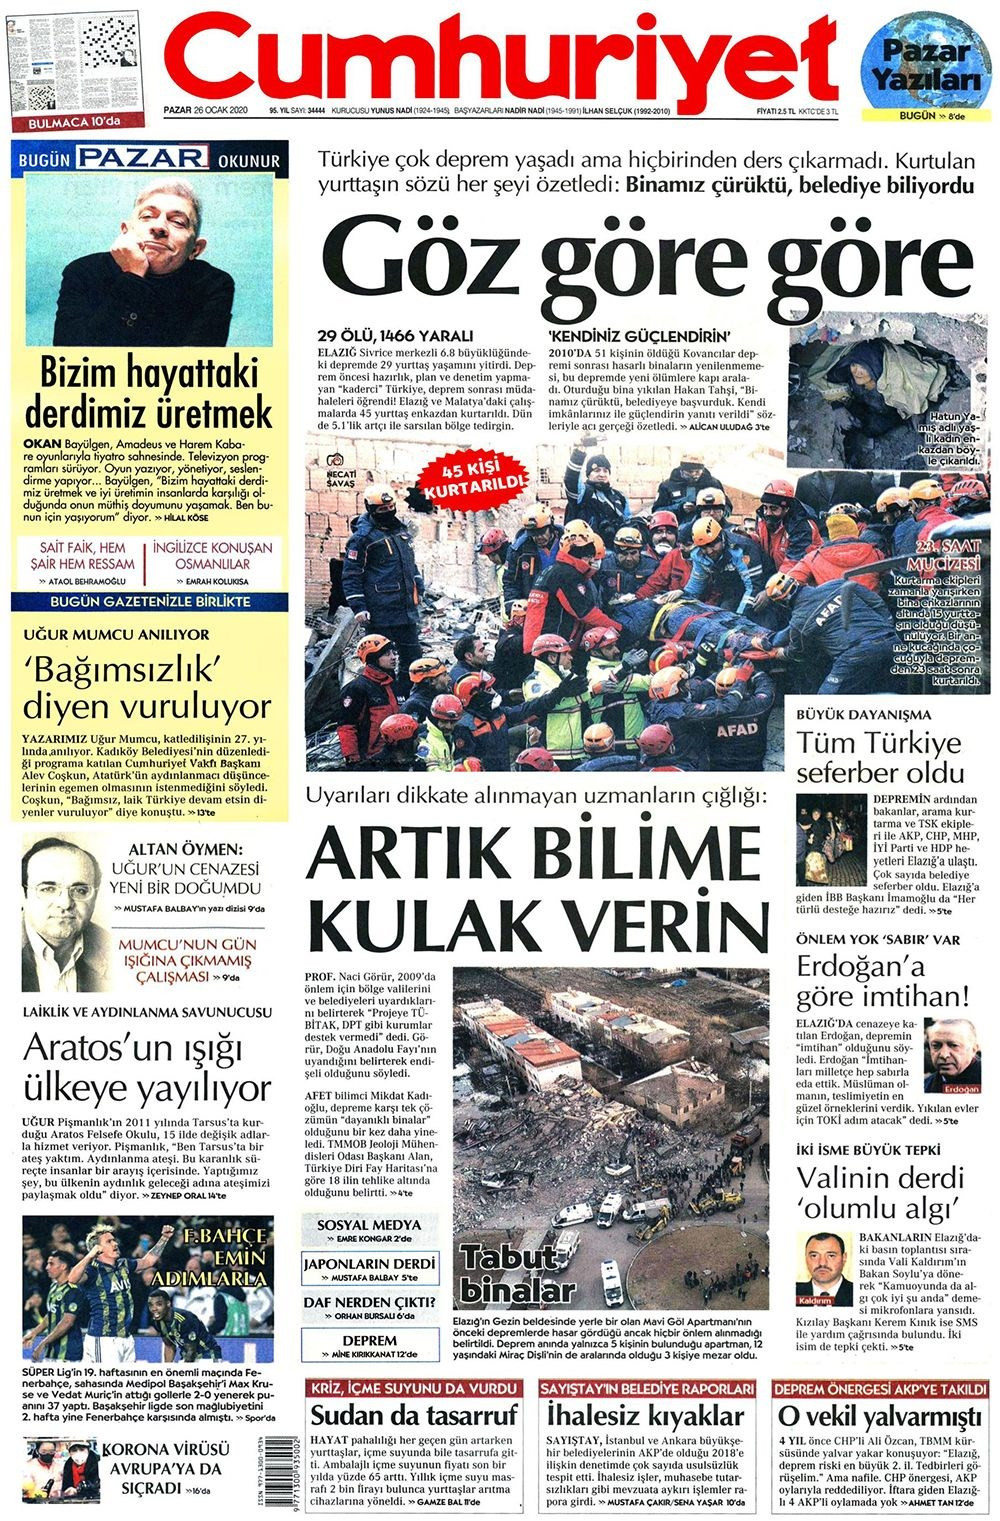 Elazığ depremi gazete manşetlerinde! 26 Ocak 2020 gazete manşetleri - Resim: 2